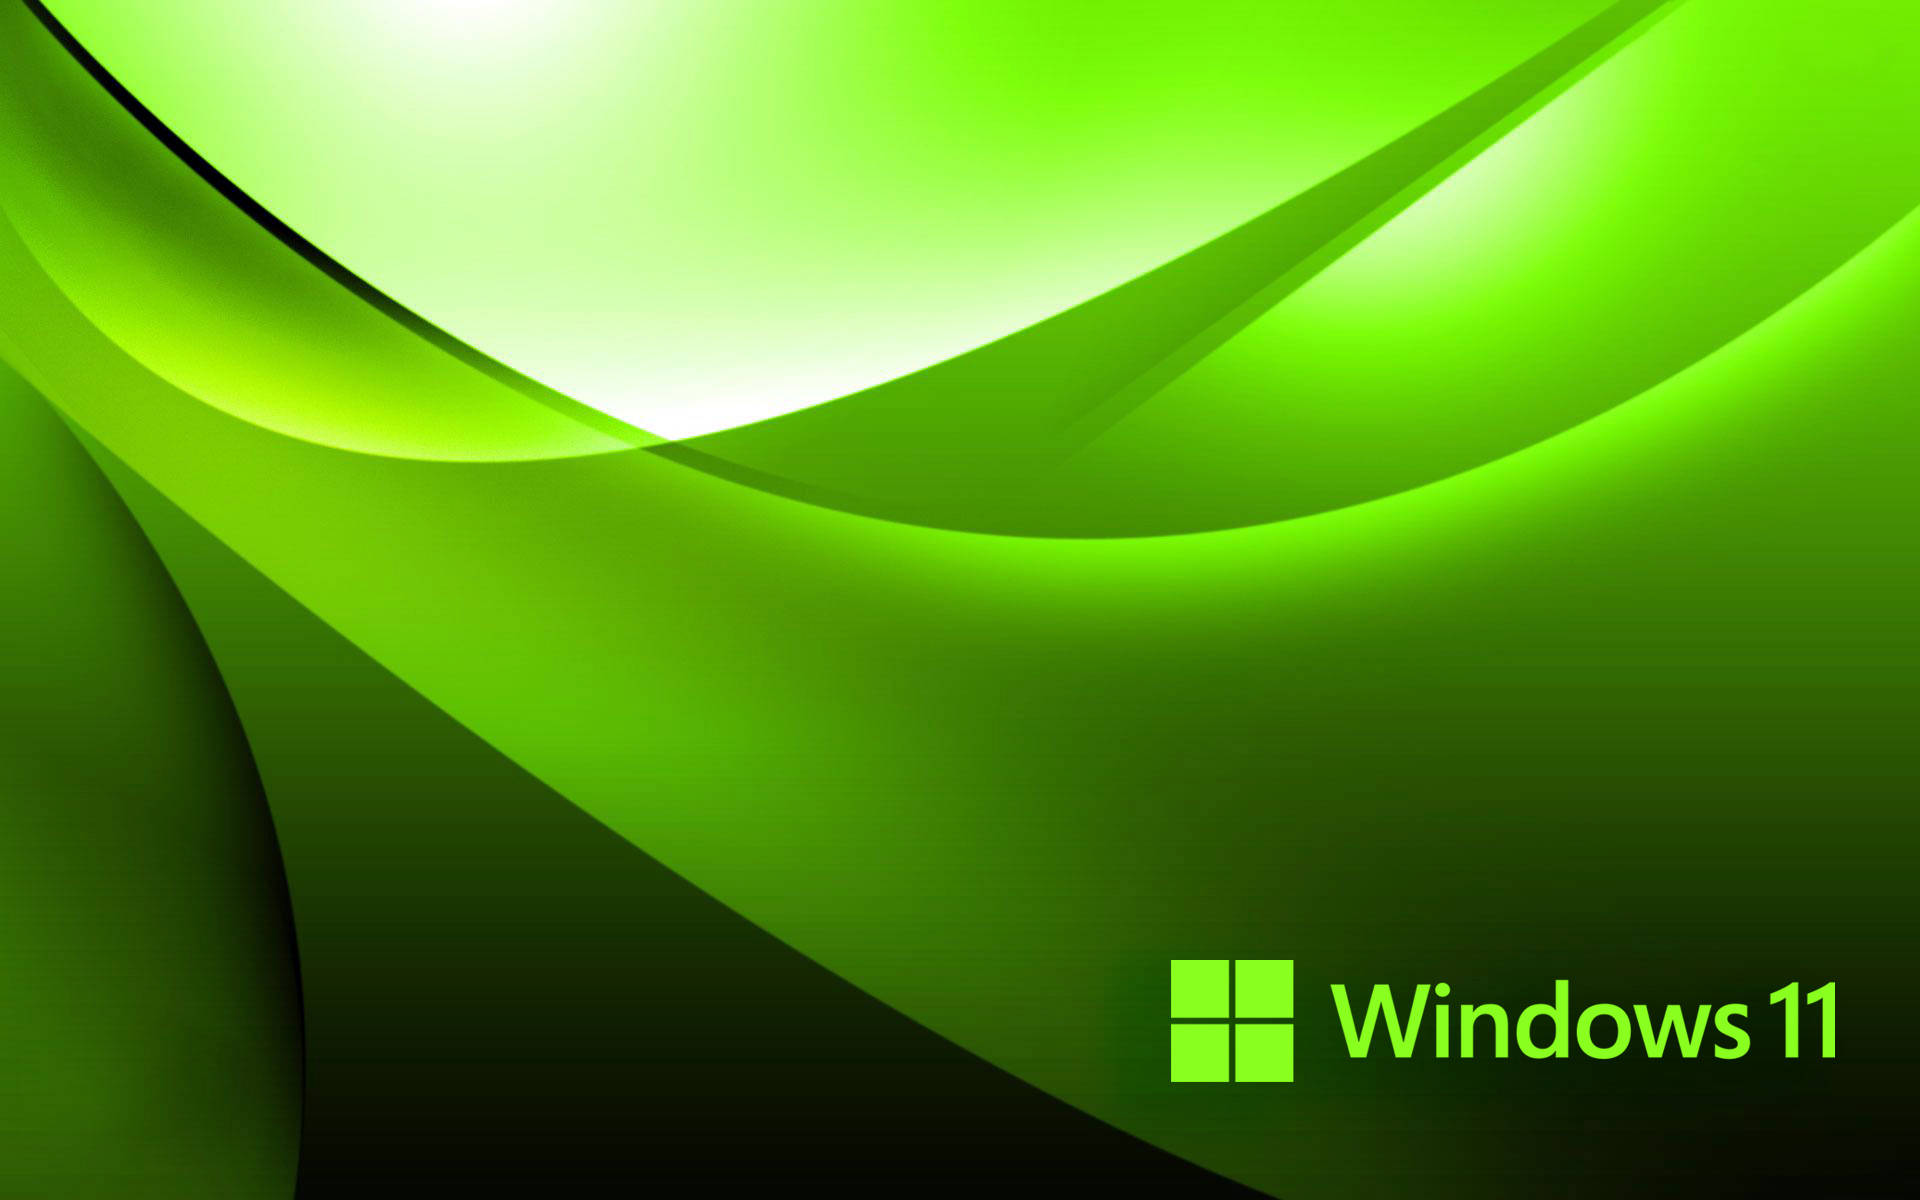 Windows 11 Green Wallpaper